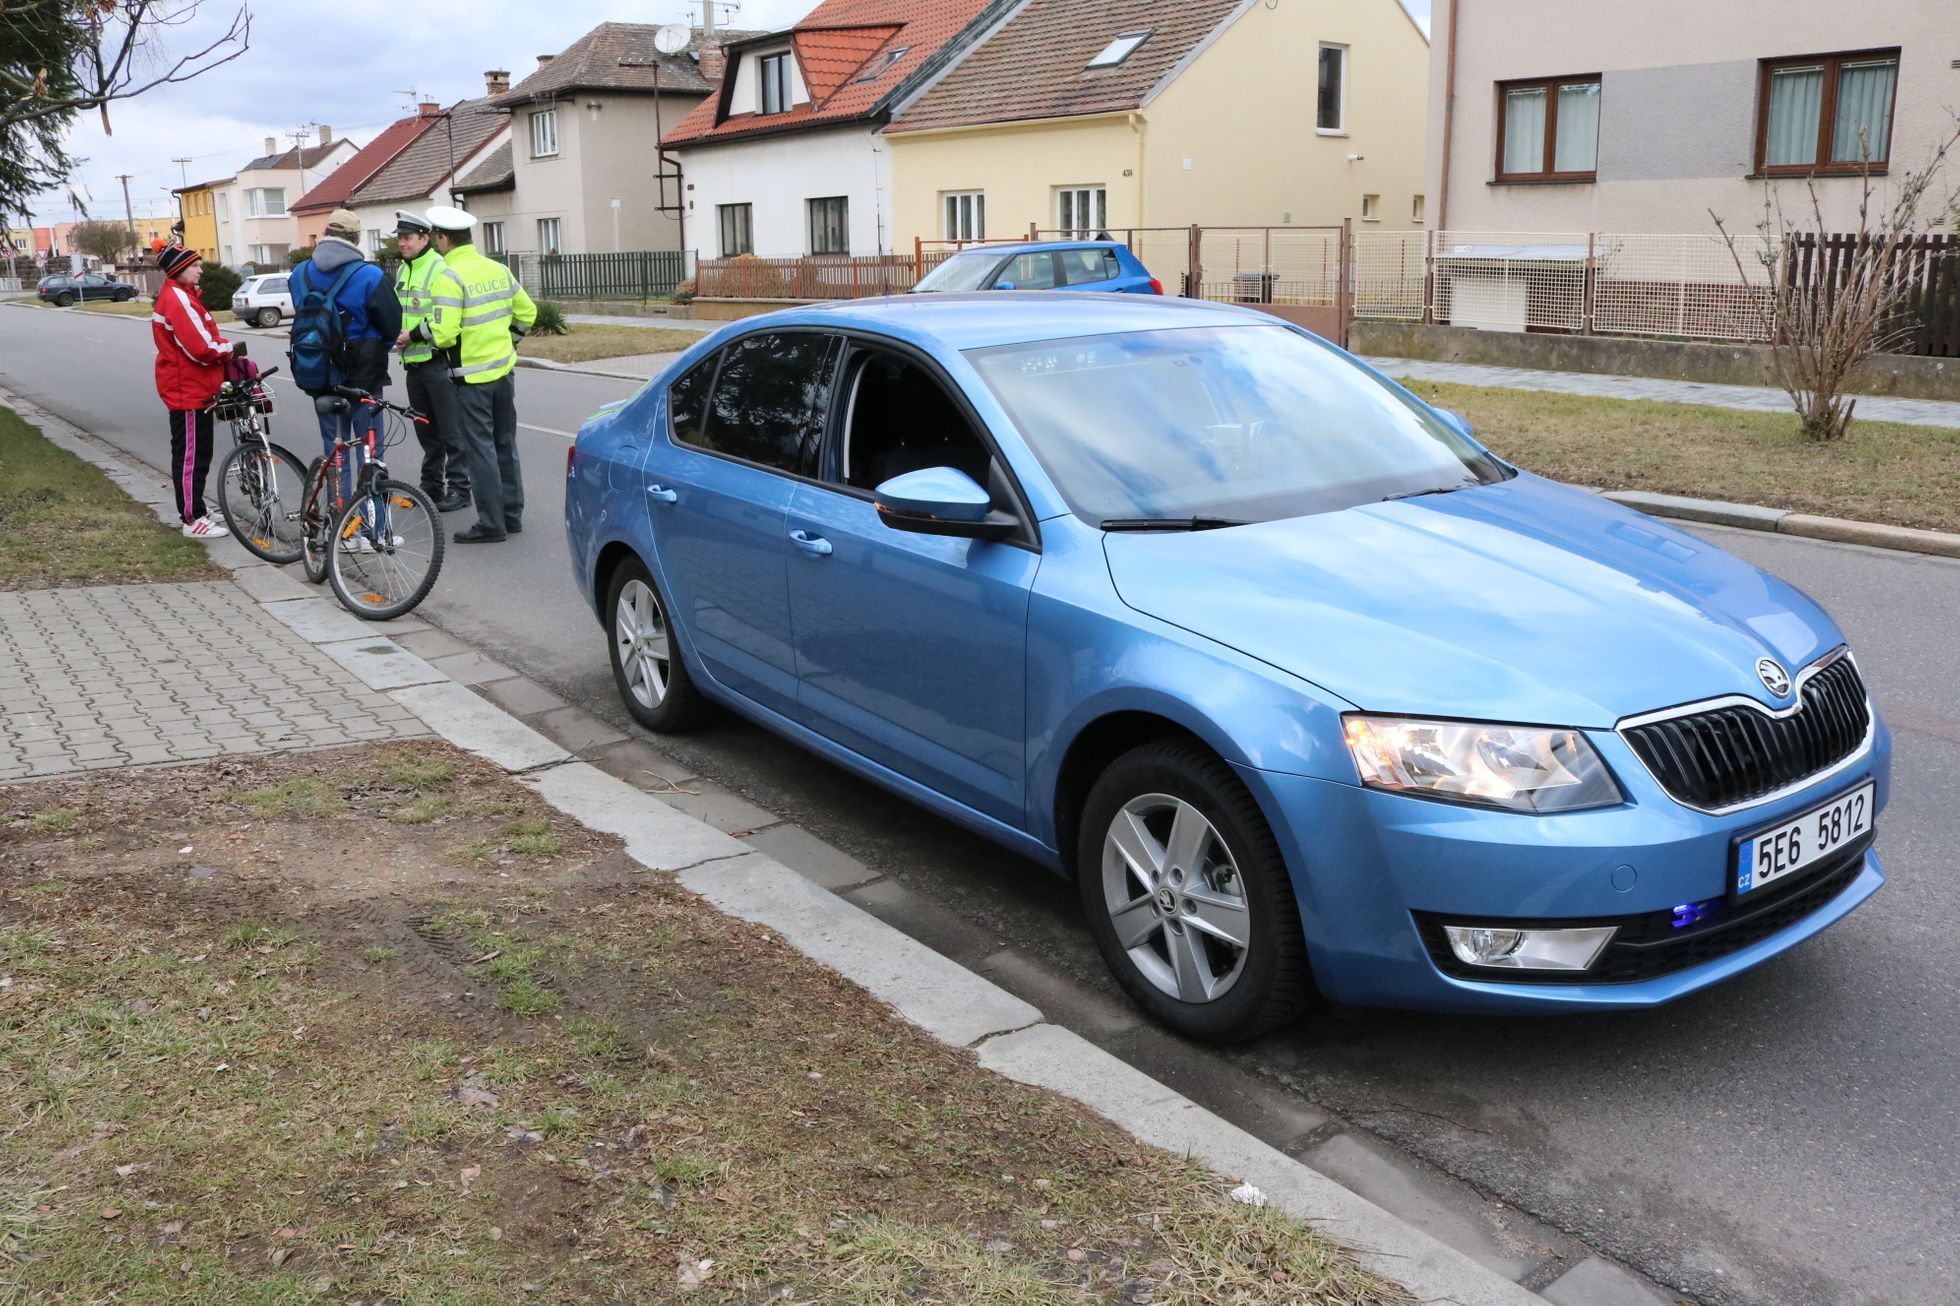 Policejní octavie v akci - pokutovaní cyklisté